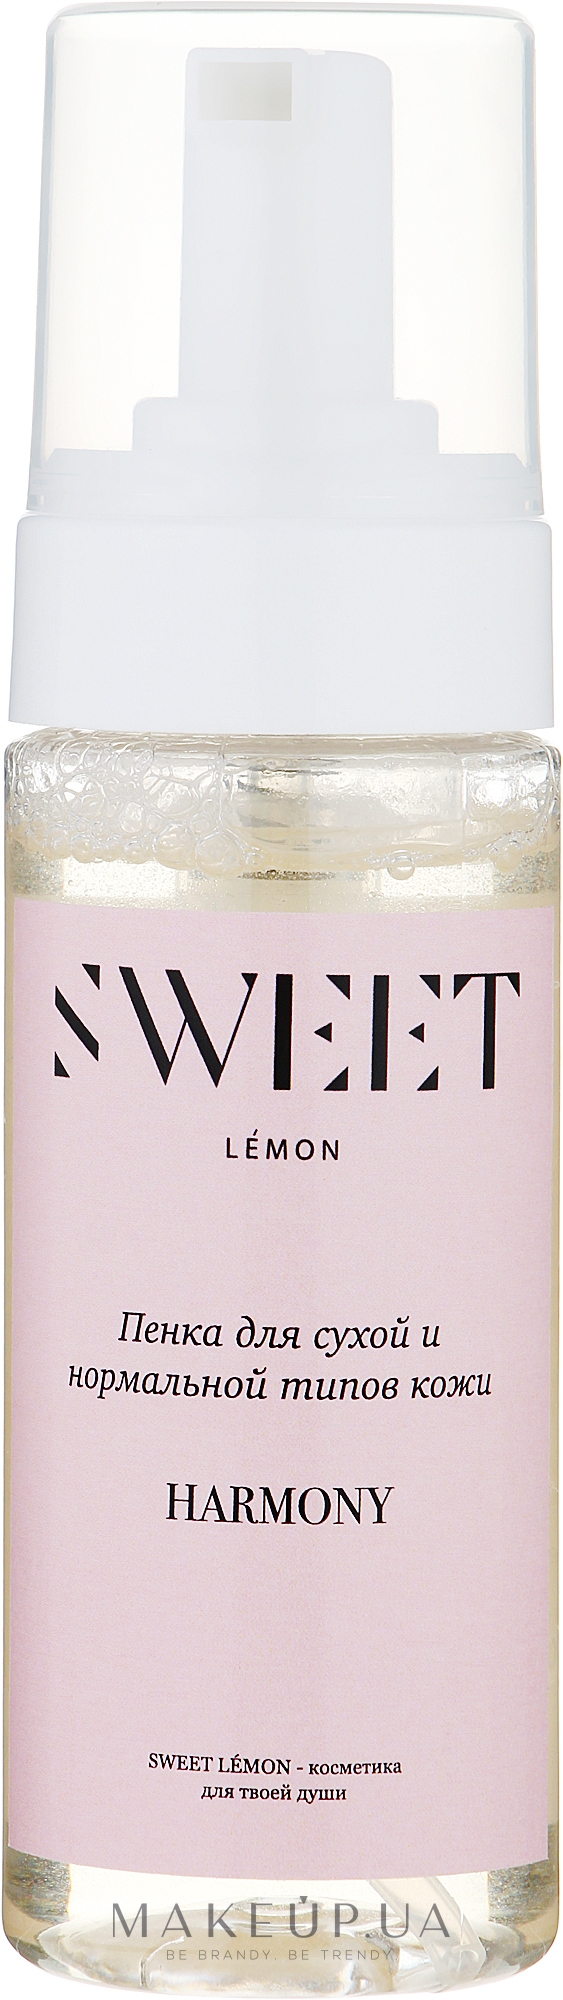 Пенка для очищения кожи "Harmony" с пребиотиком - Sweet Lemon  — фото 150ml